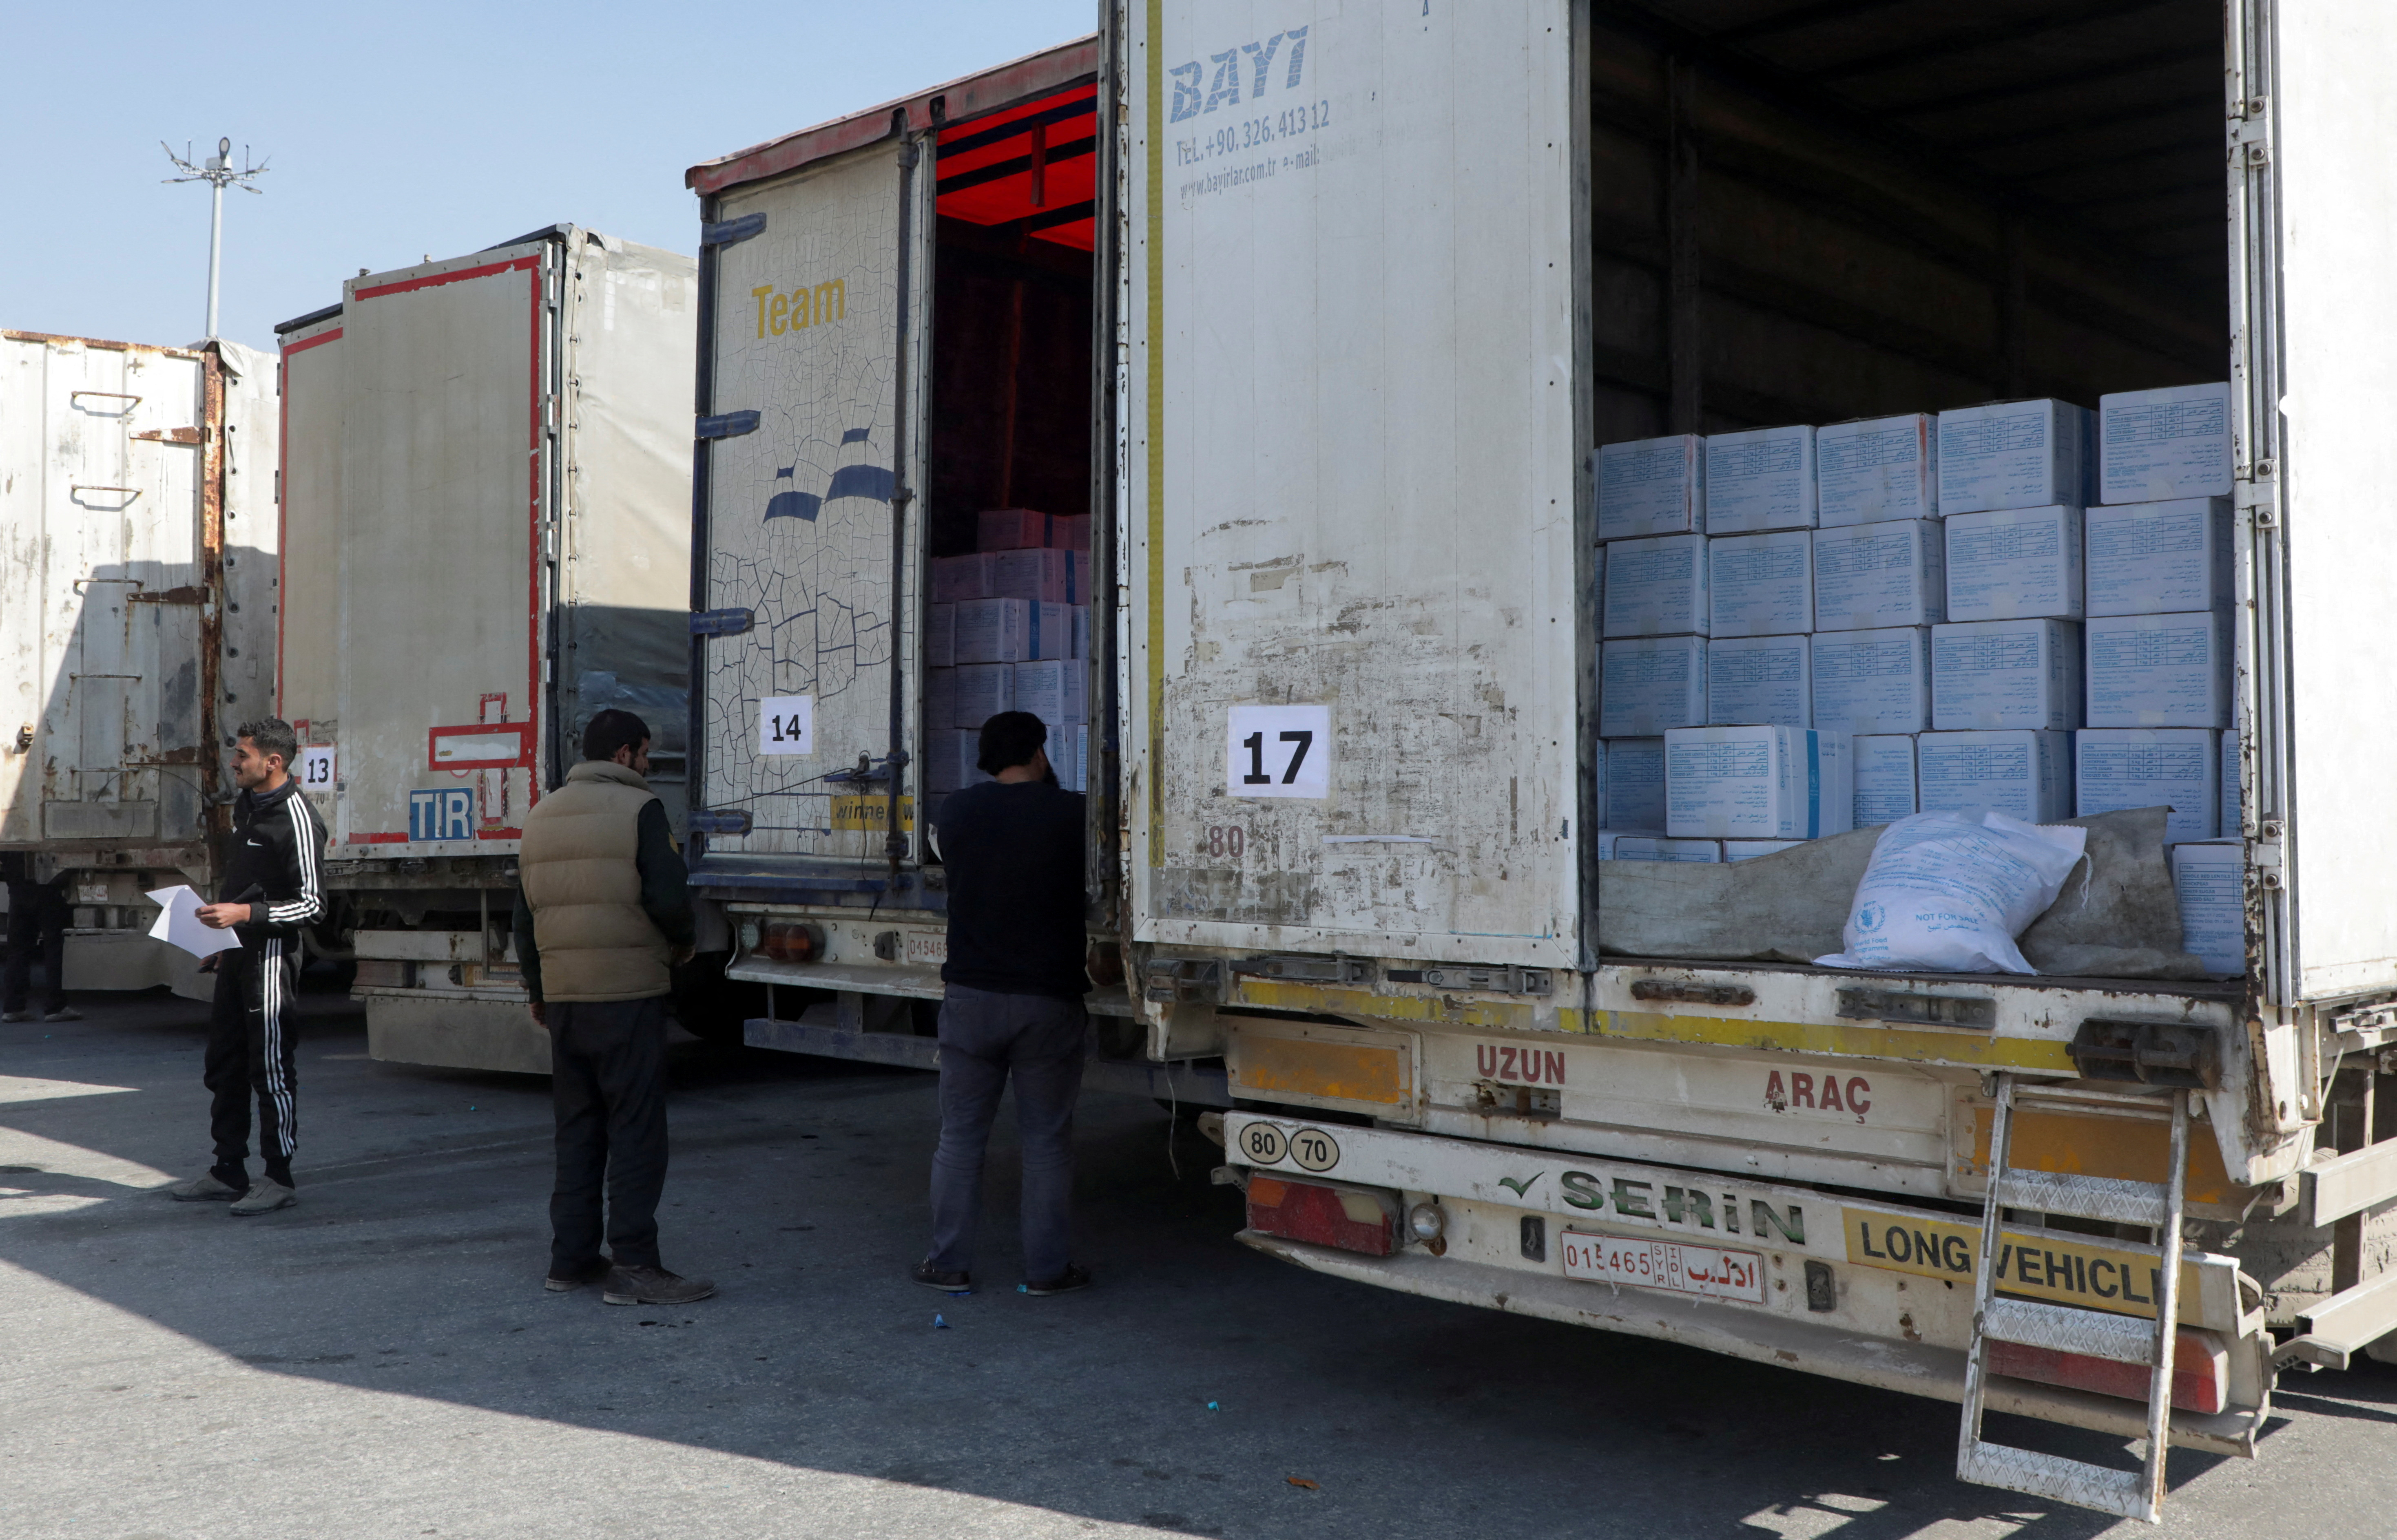 FOTO DE ARCHIVO: Hombres inspeccionan camiones que transportan ayuda del Programa Mundial de Alimentos (PMA) de la ONU, tras un terremoto mortal, en el cruce de Bab al-Hawa, Siria (REUTERS/Mahmoud Hassano)